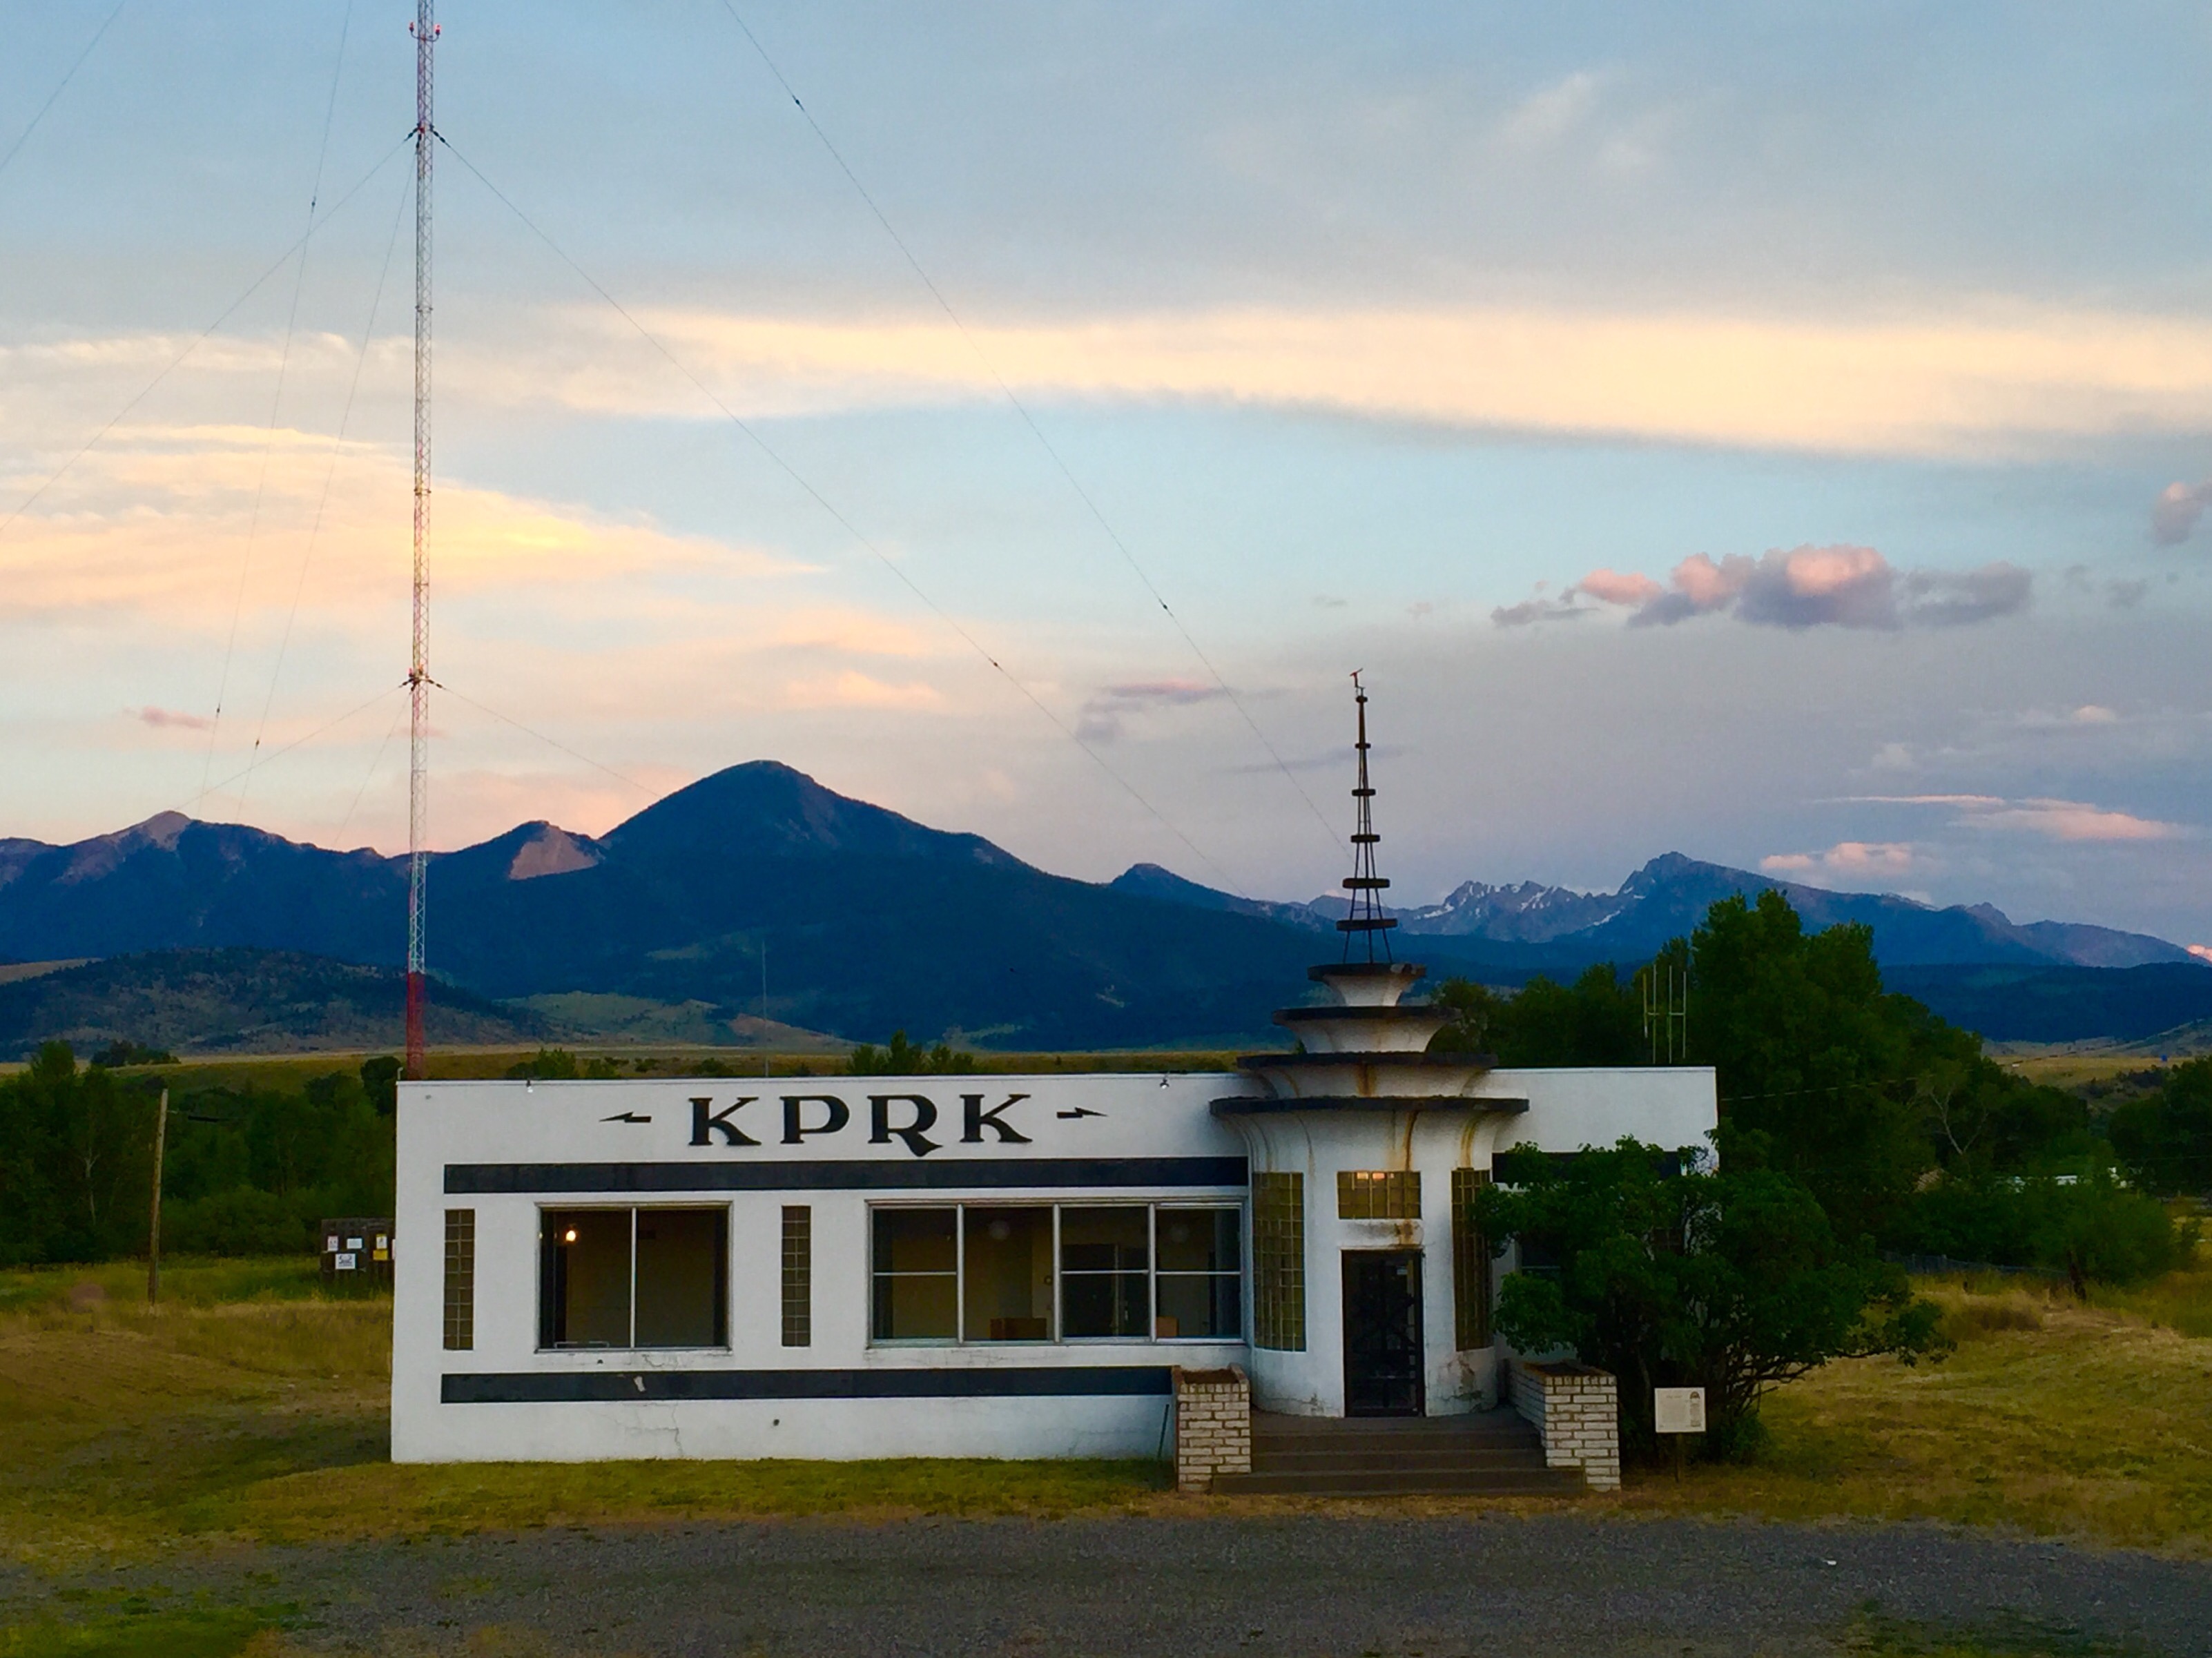 KPRK - Livingston, Montana - July 1, 2016